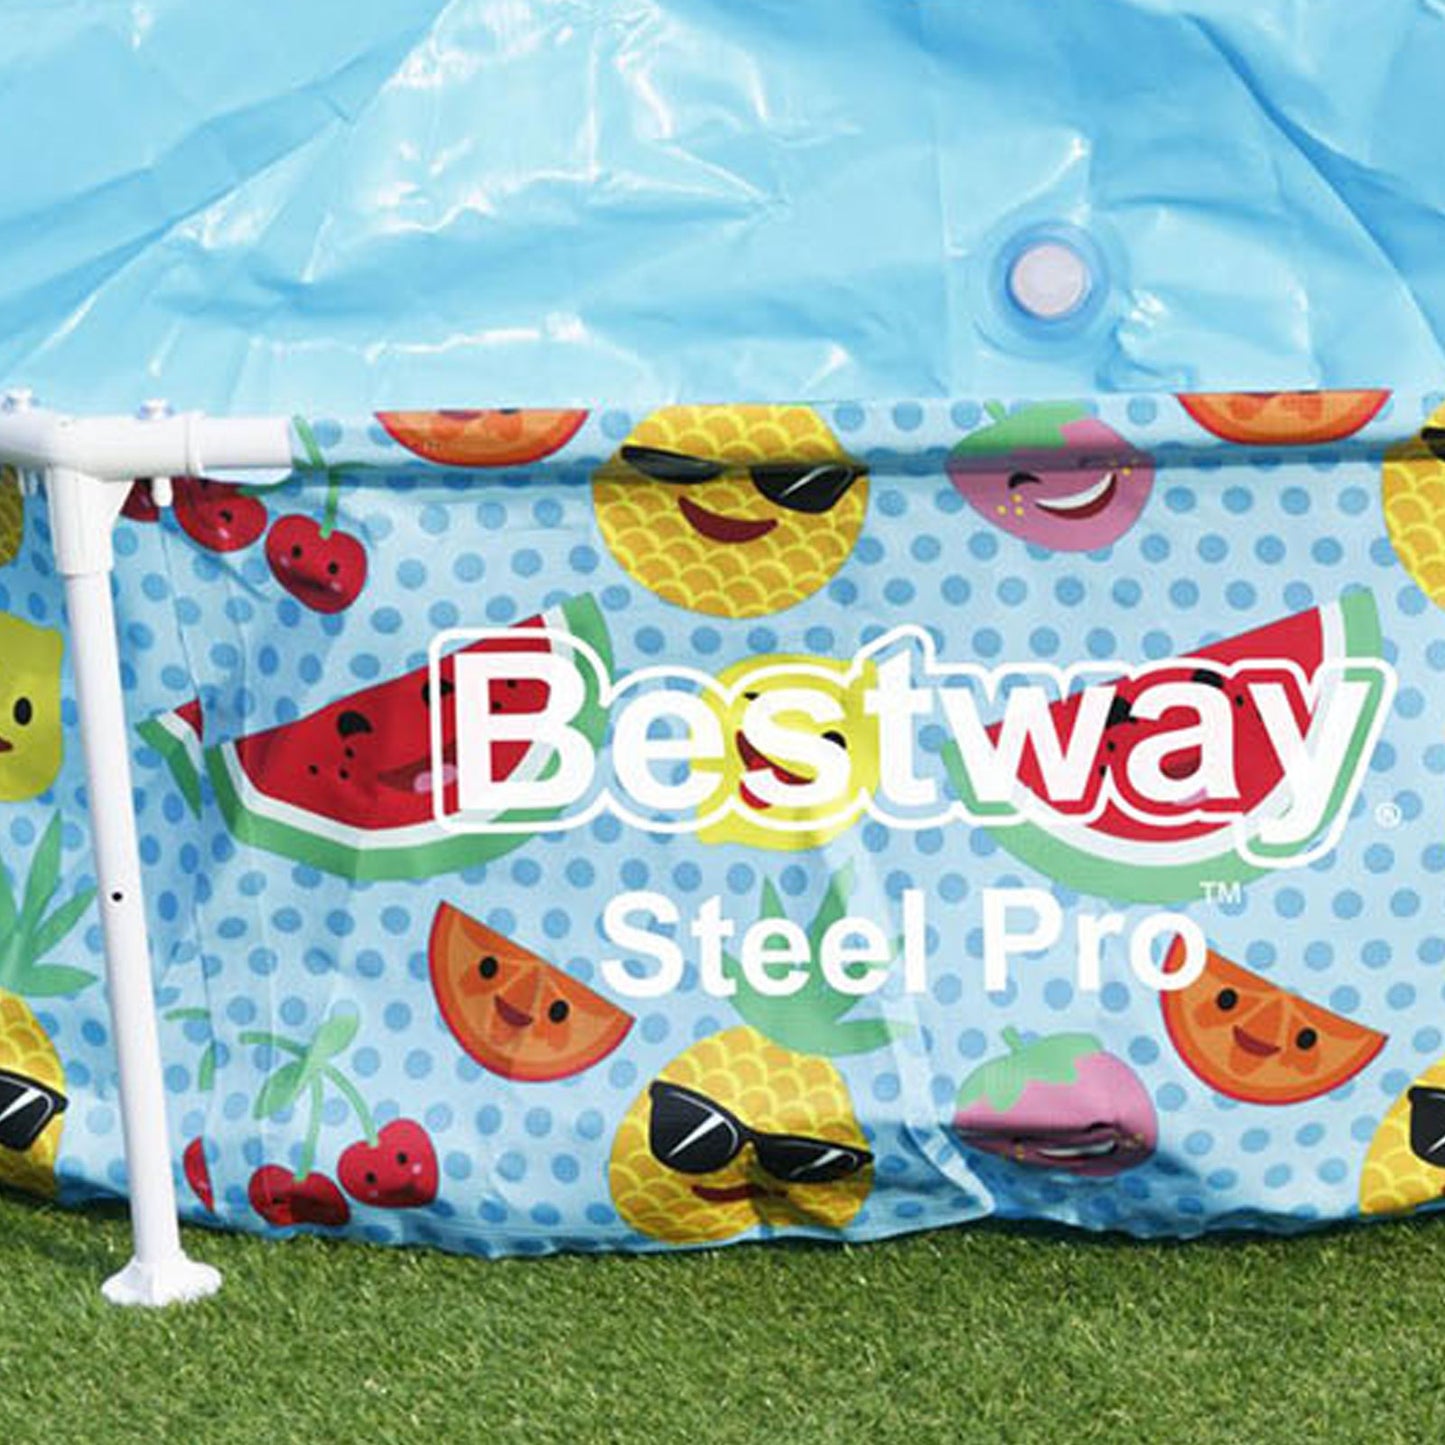 Bestway Steel Pro™ Splash-in-Shade Round Above Ground Kids Pool - 2.44m x 51cm